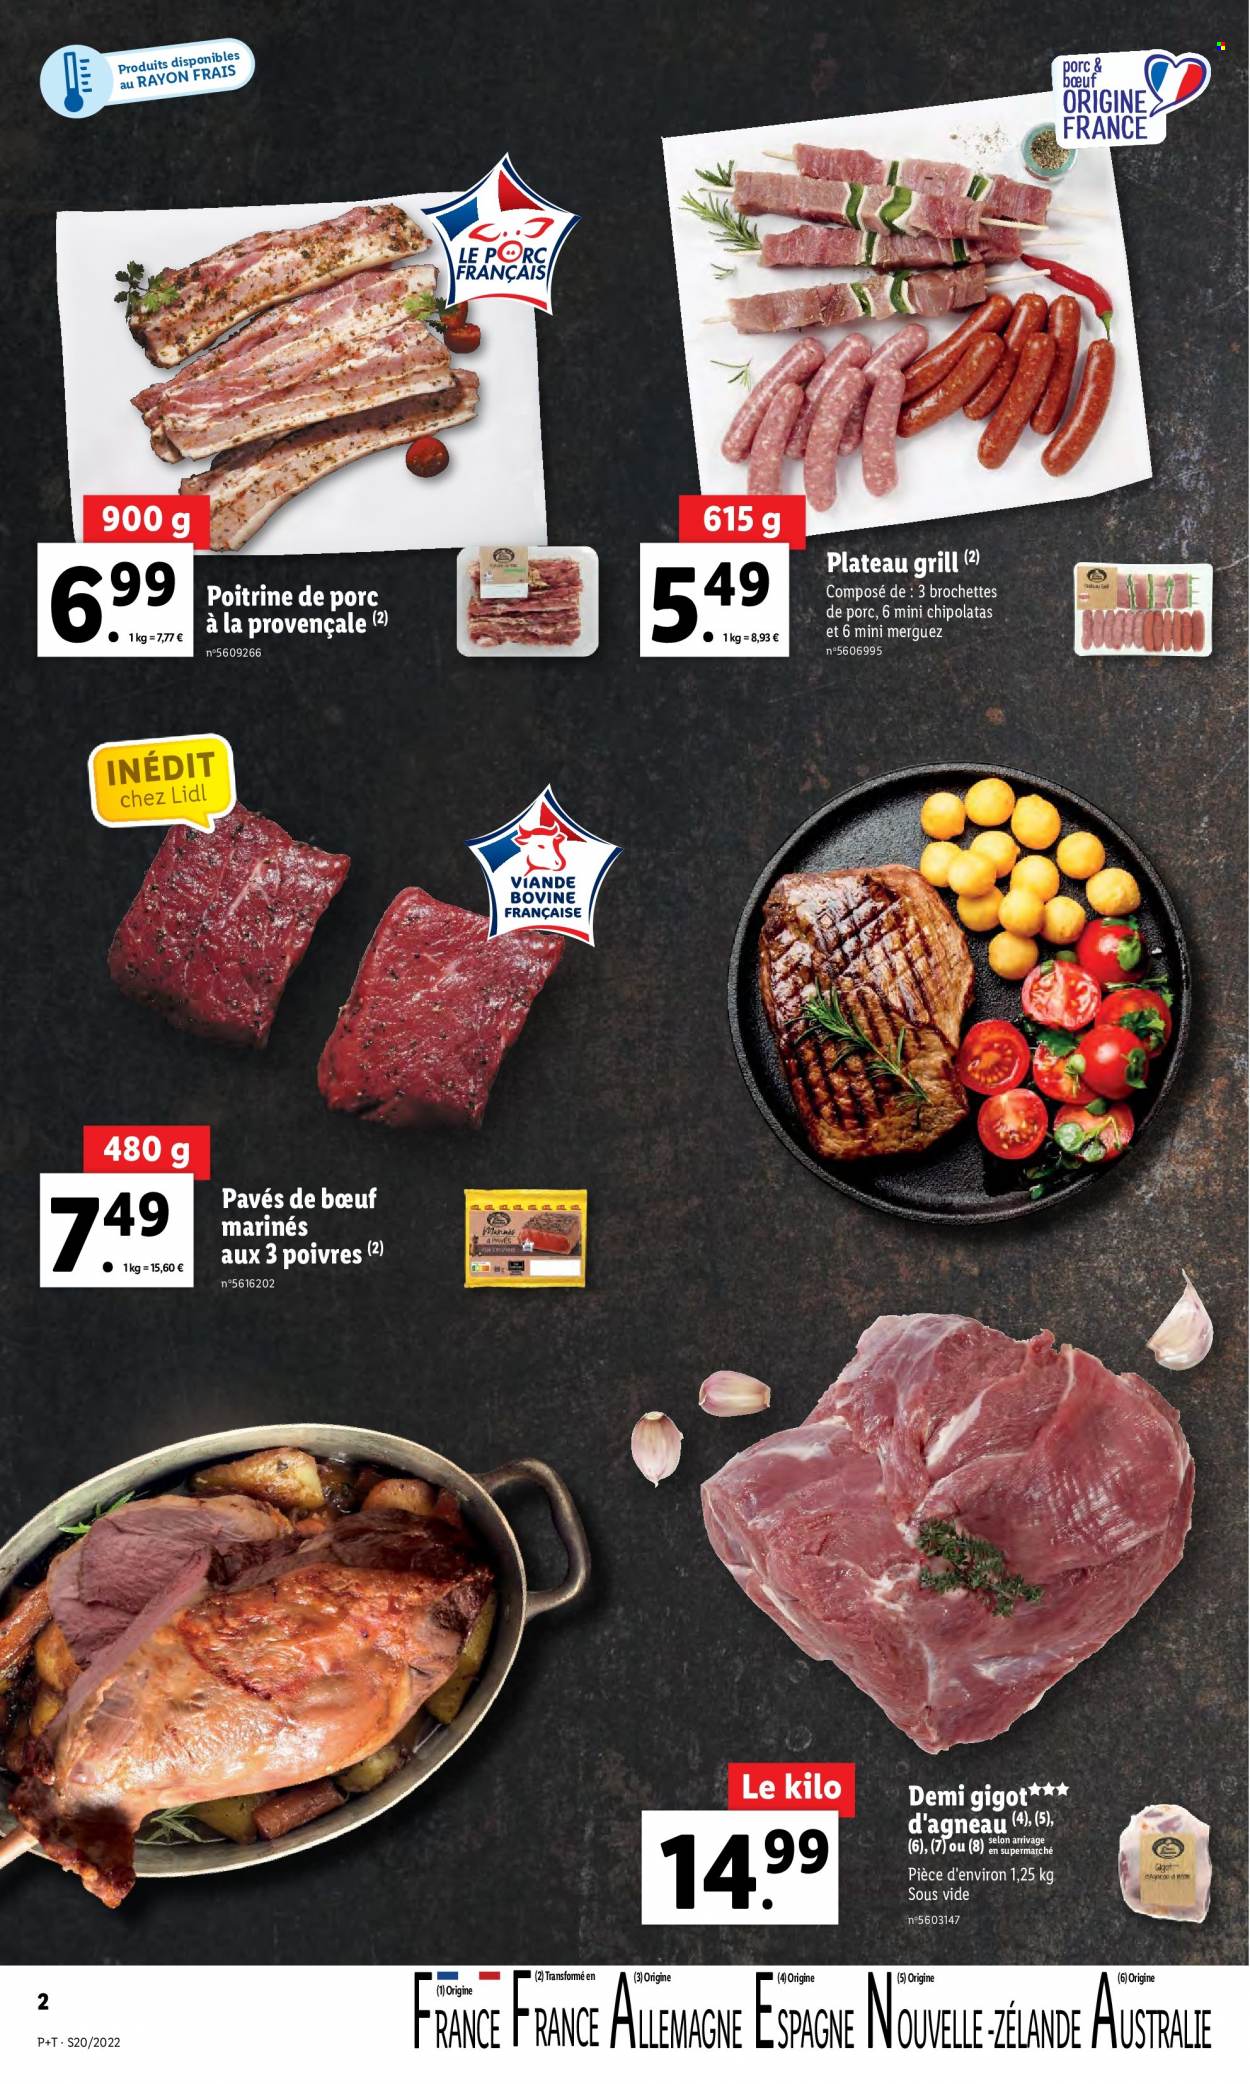 thumbnail - Catalogue Lidl - 18/05/2022 - 24/05/2022 - Produits soldés - poitrine de porc, brochettes de porc, viande de porc, merguez, chipolata, grill. Page 2.